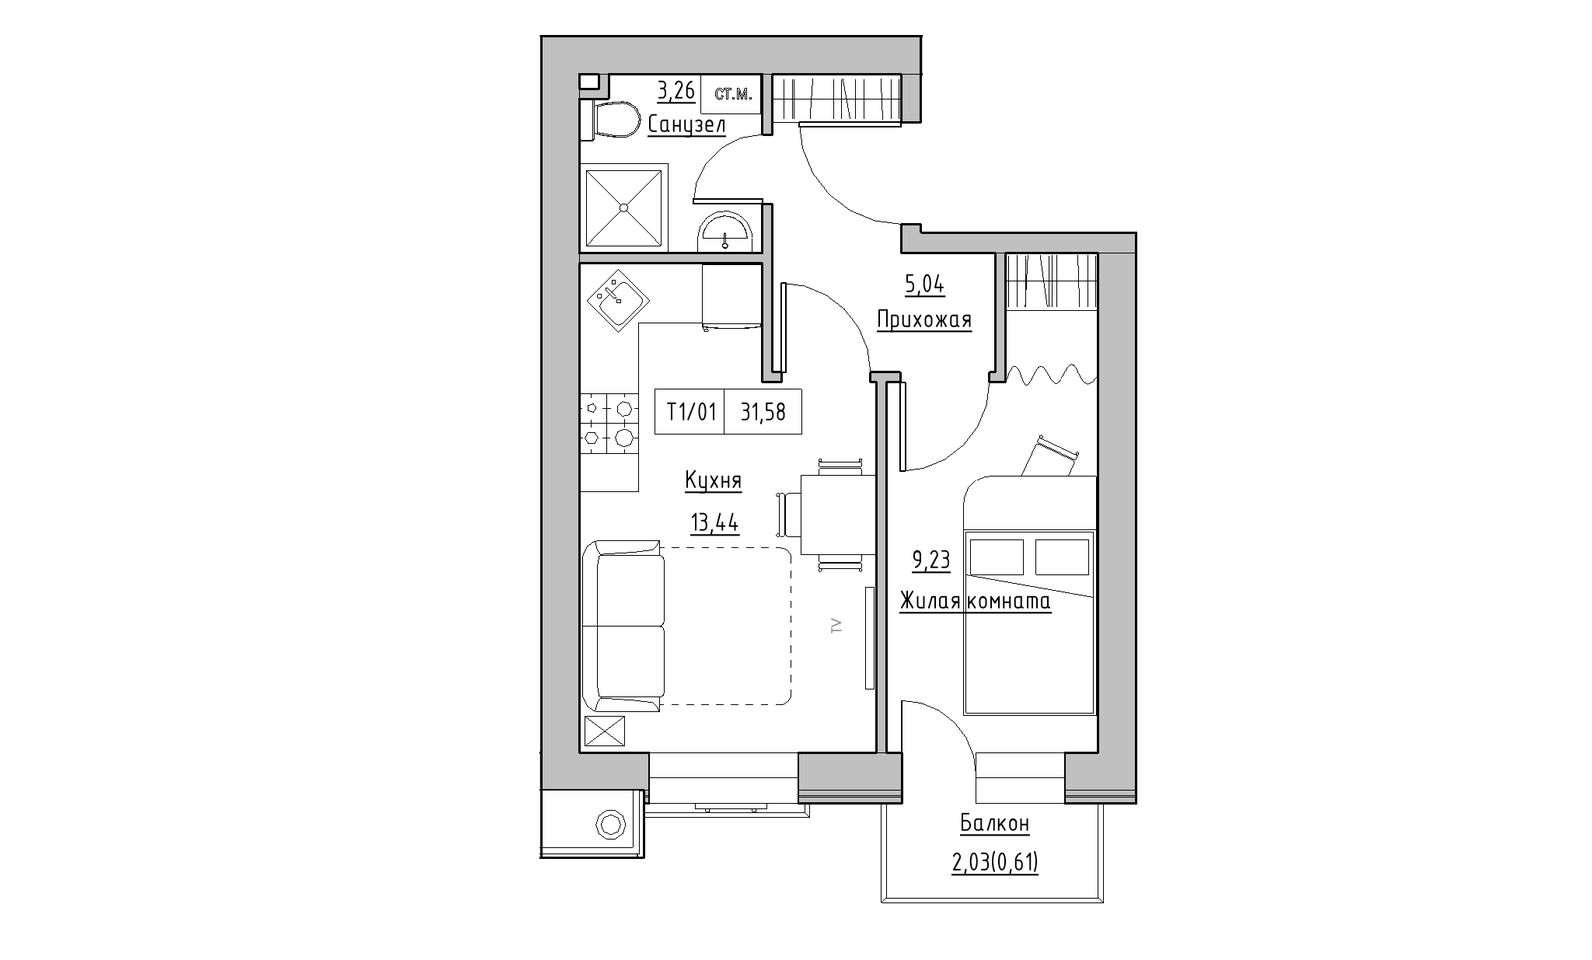 Планування 1-к квартира площею 31.58м2, KS-014-04/0003.